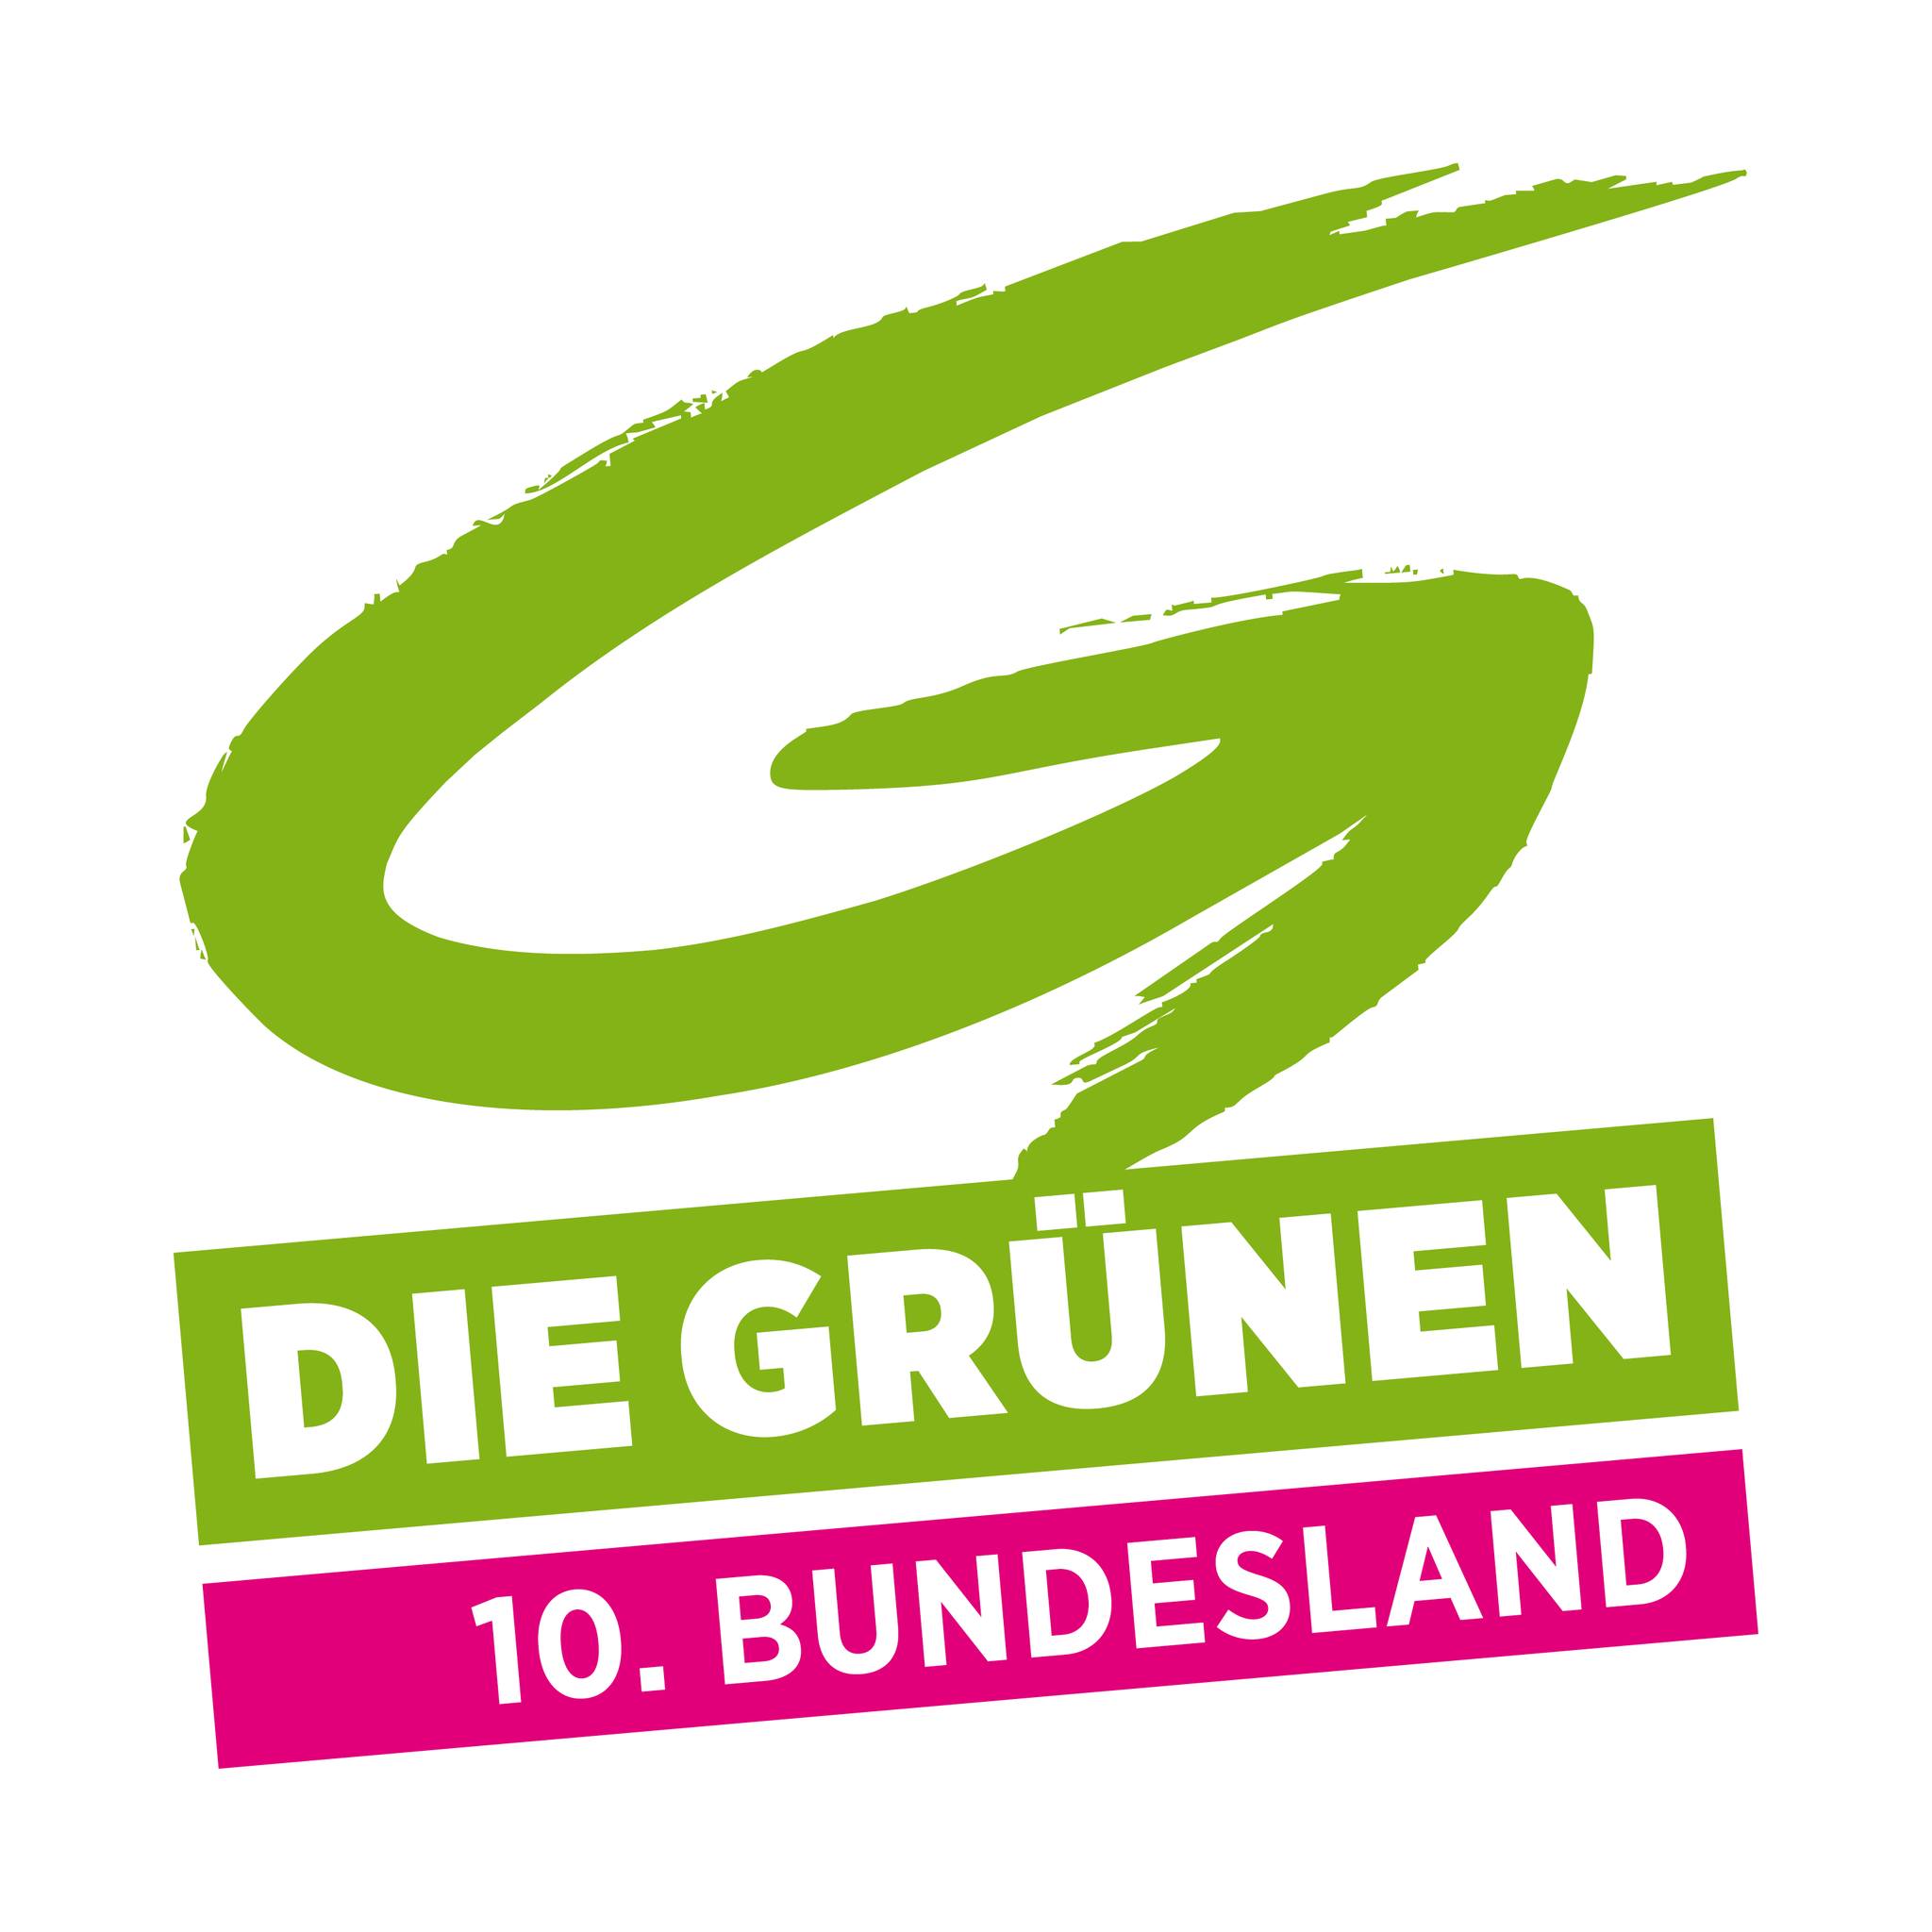 Die Grünen - 10. Bundesland